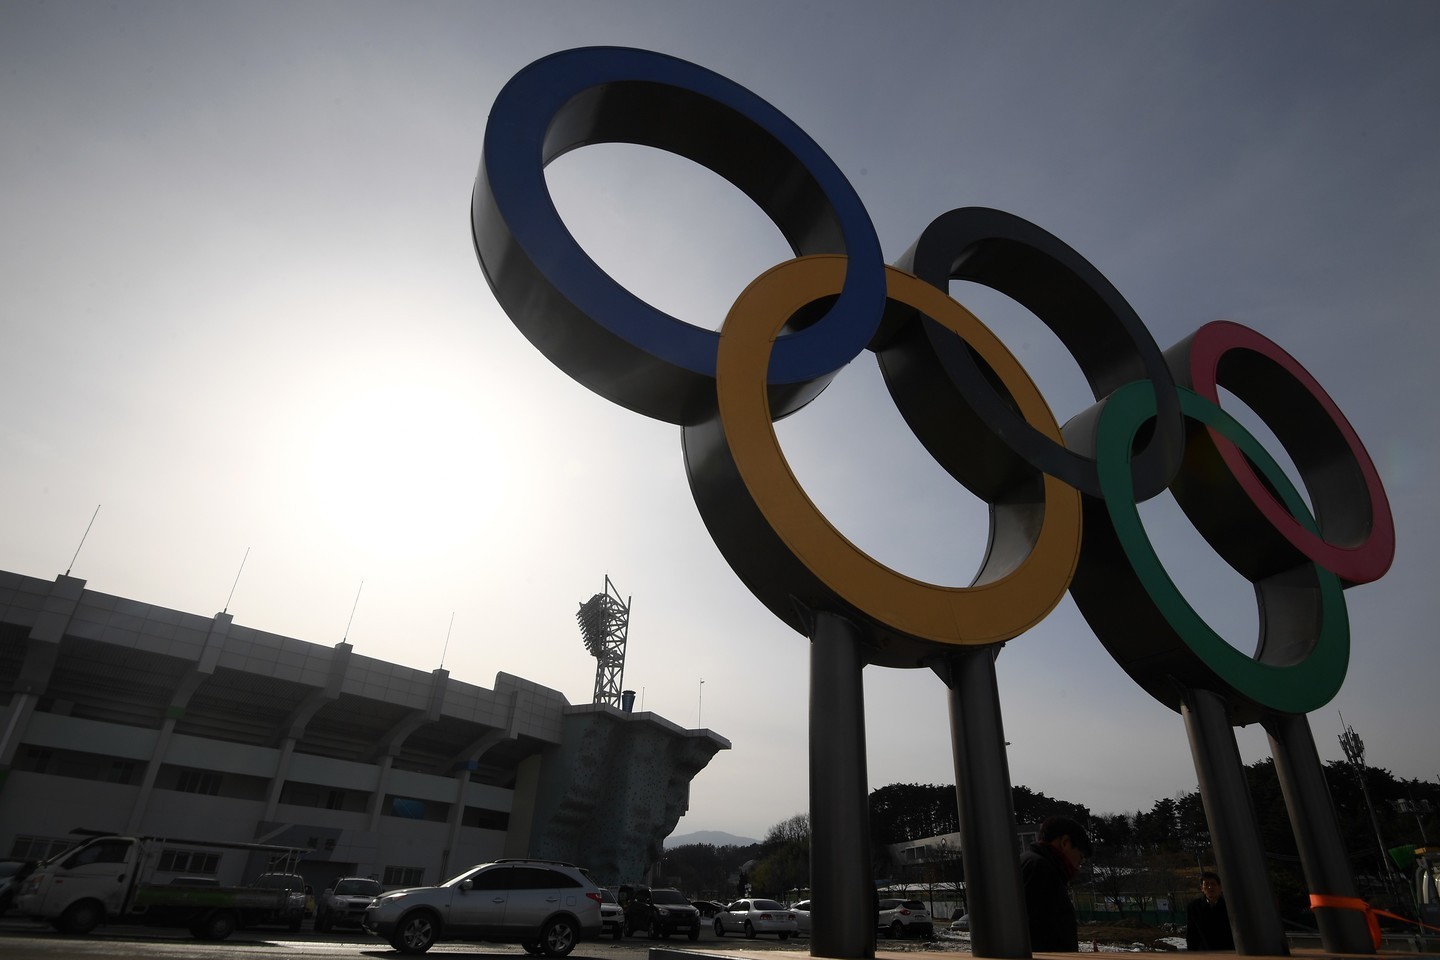 Олимпийские кольца в Олимпийском парке в Пхенчхане.&nbsp;Фото:&nbsp;&nbsp;&copy;&nbsp;РИА Новости/Рамиль Ситдиков